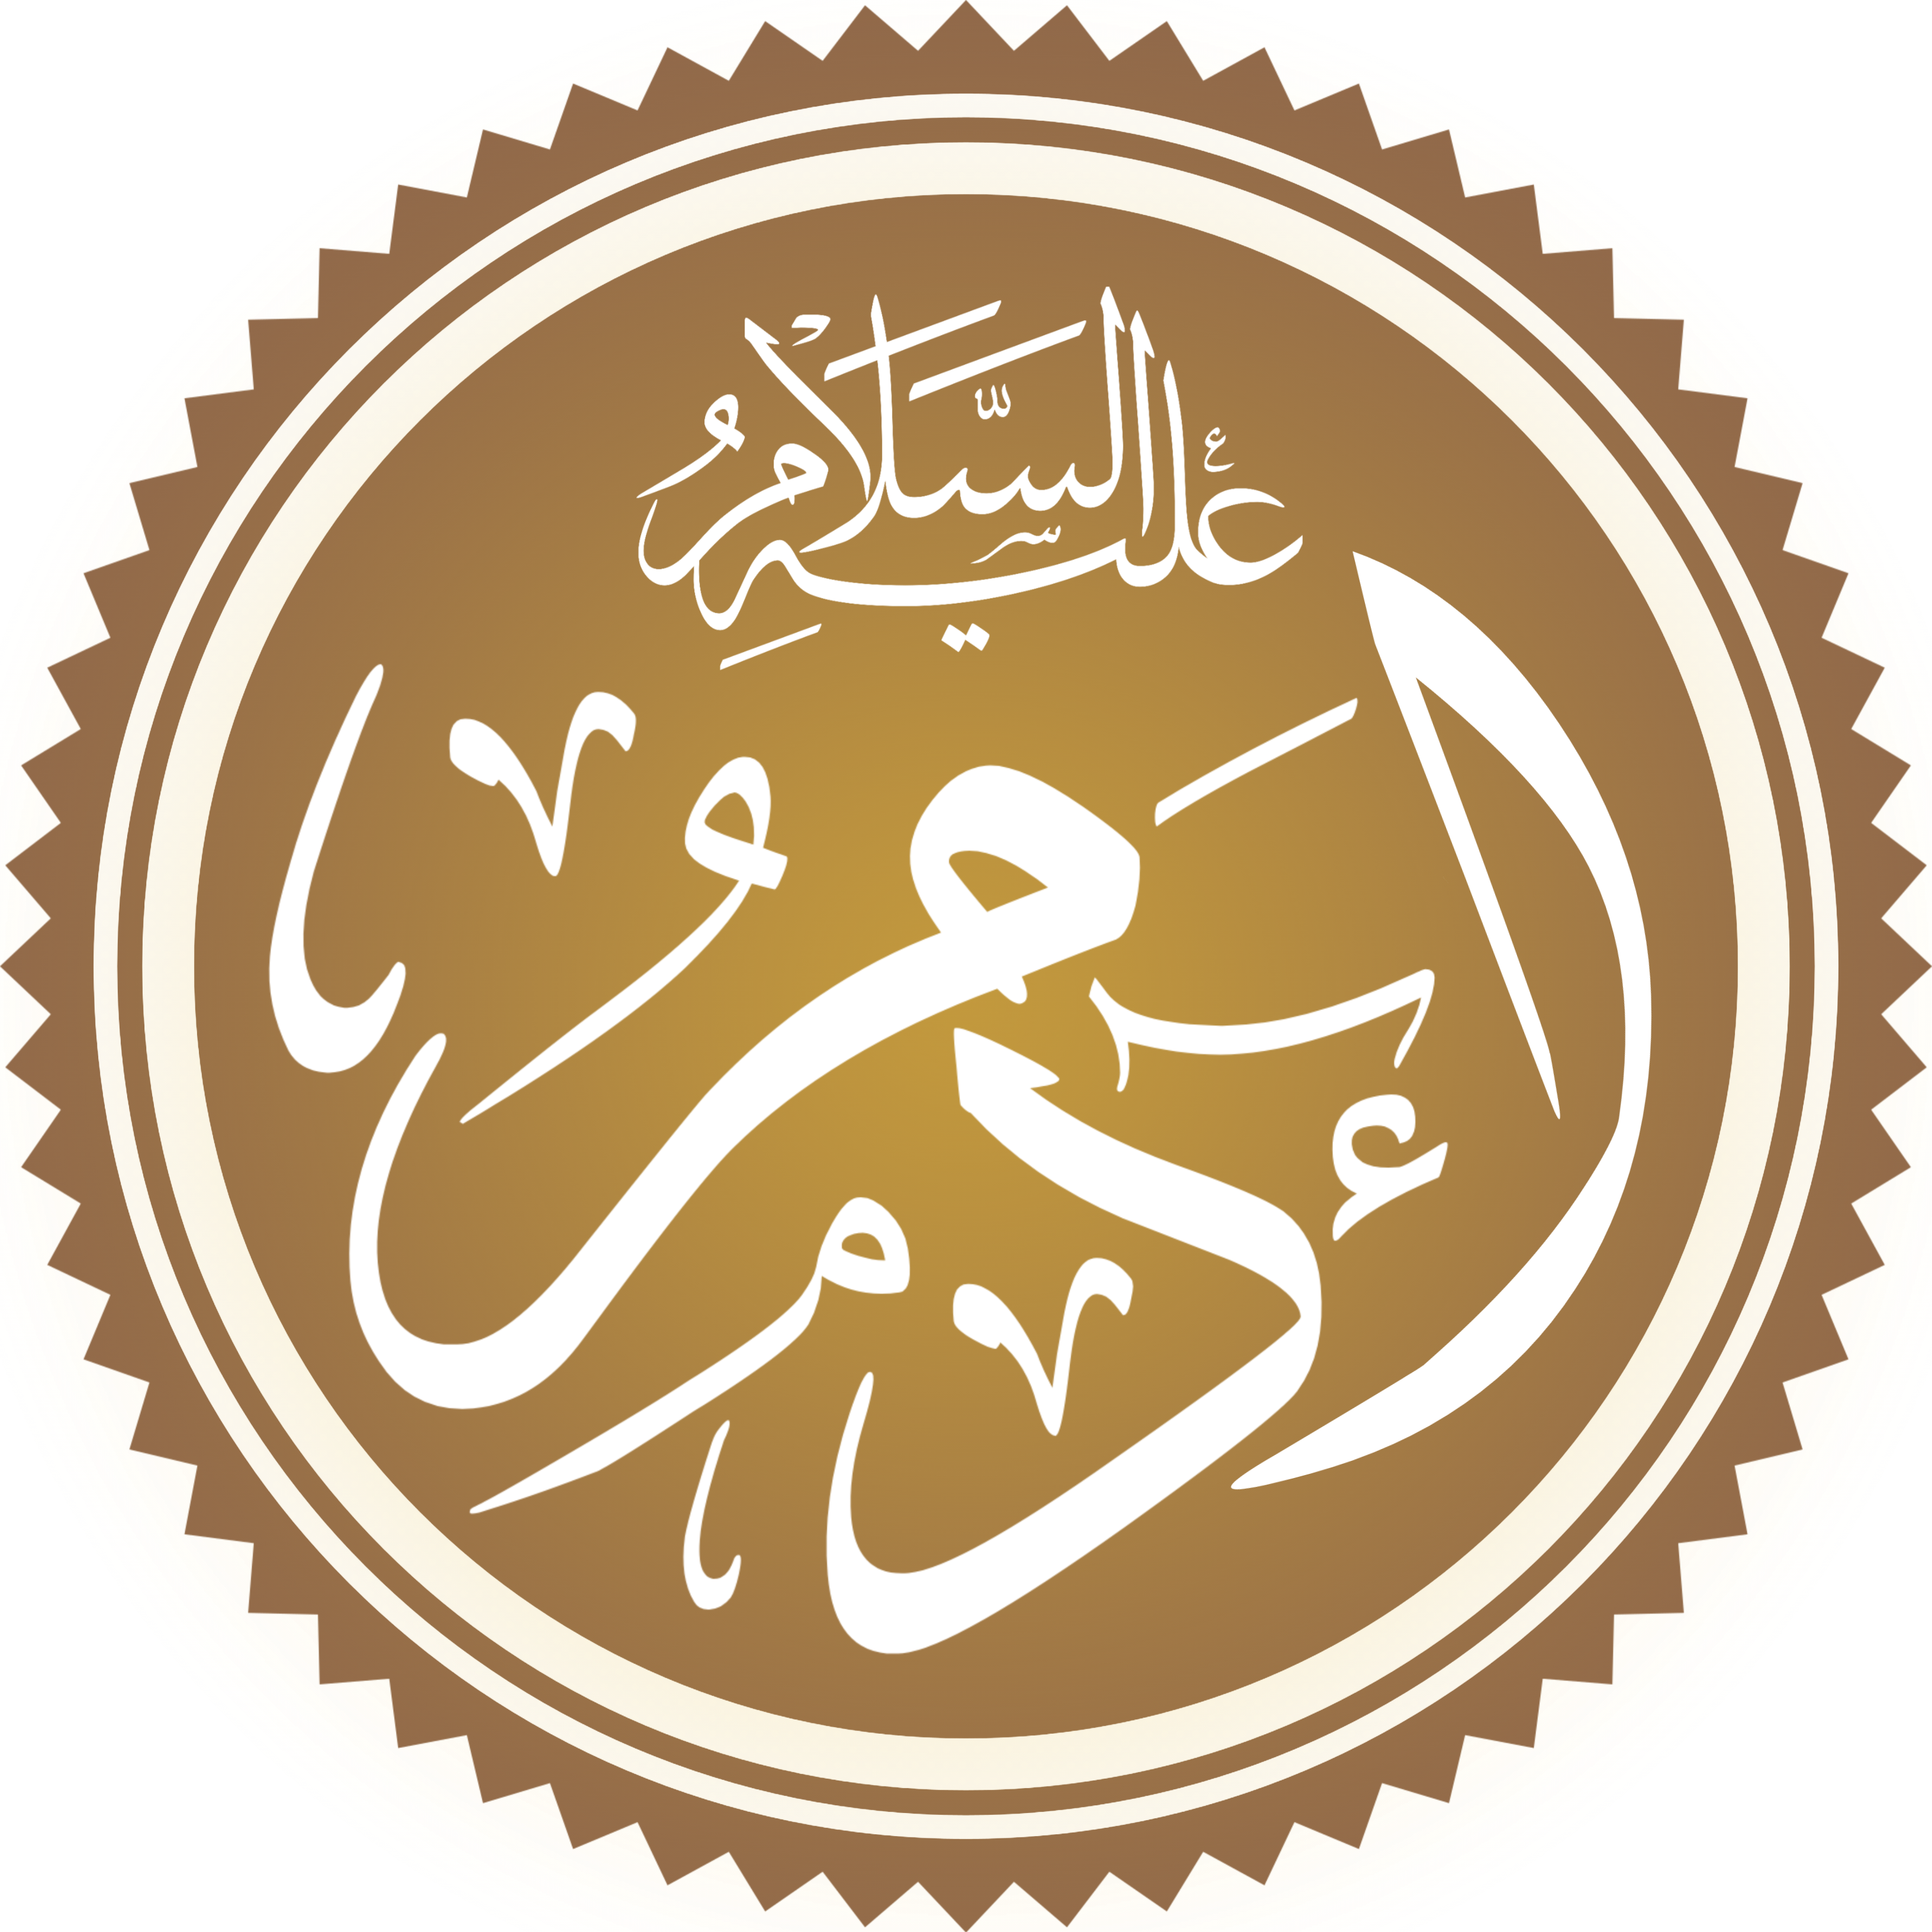 Адам на арабском языке в каллиграфическом стиле